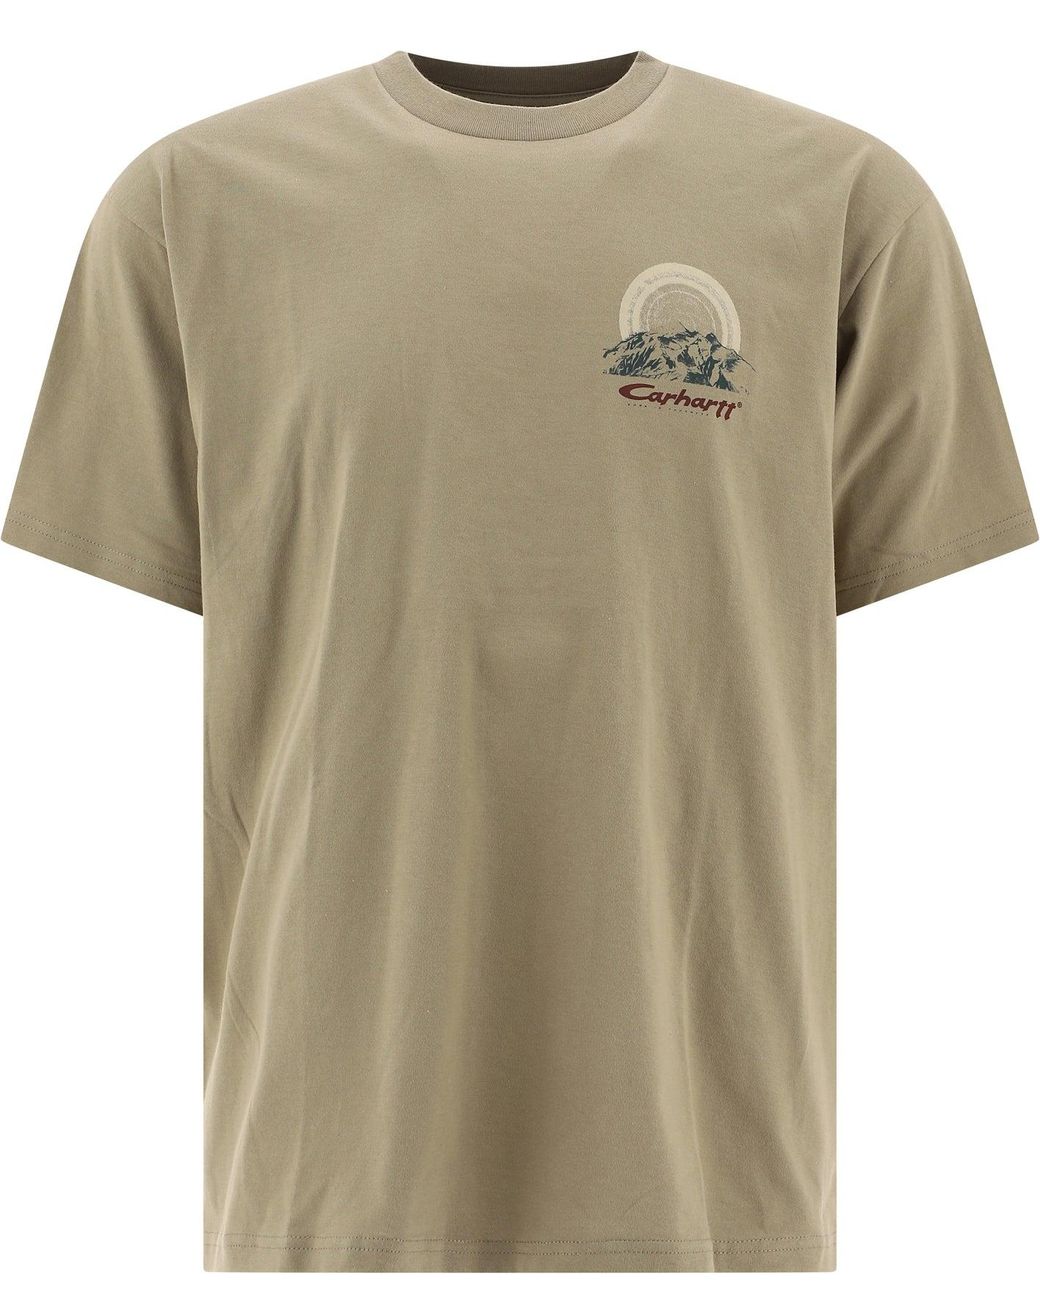 Carhartt WIP "mountain" T-shirt for Men | Lyst